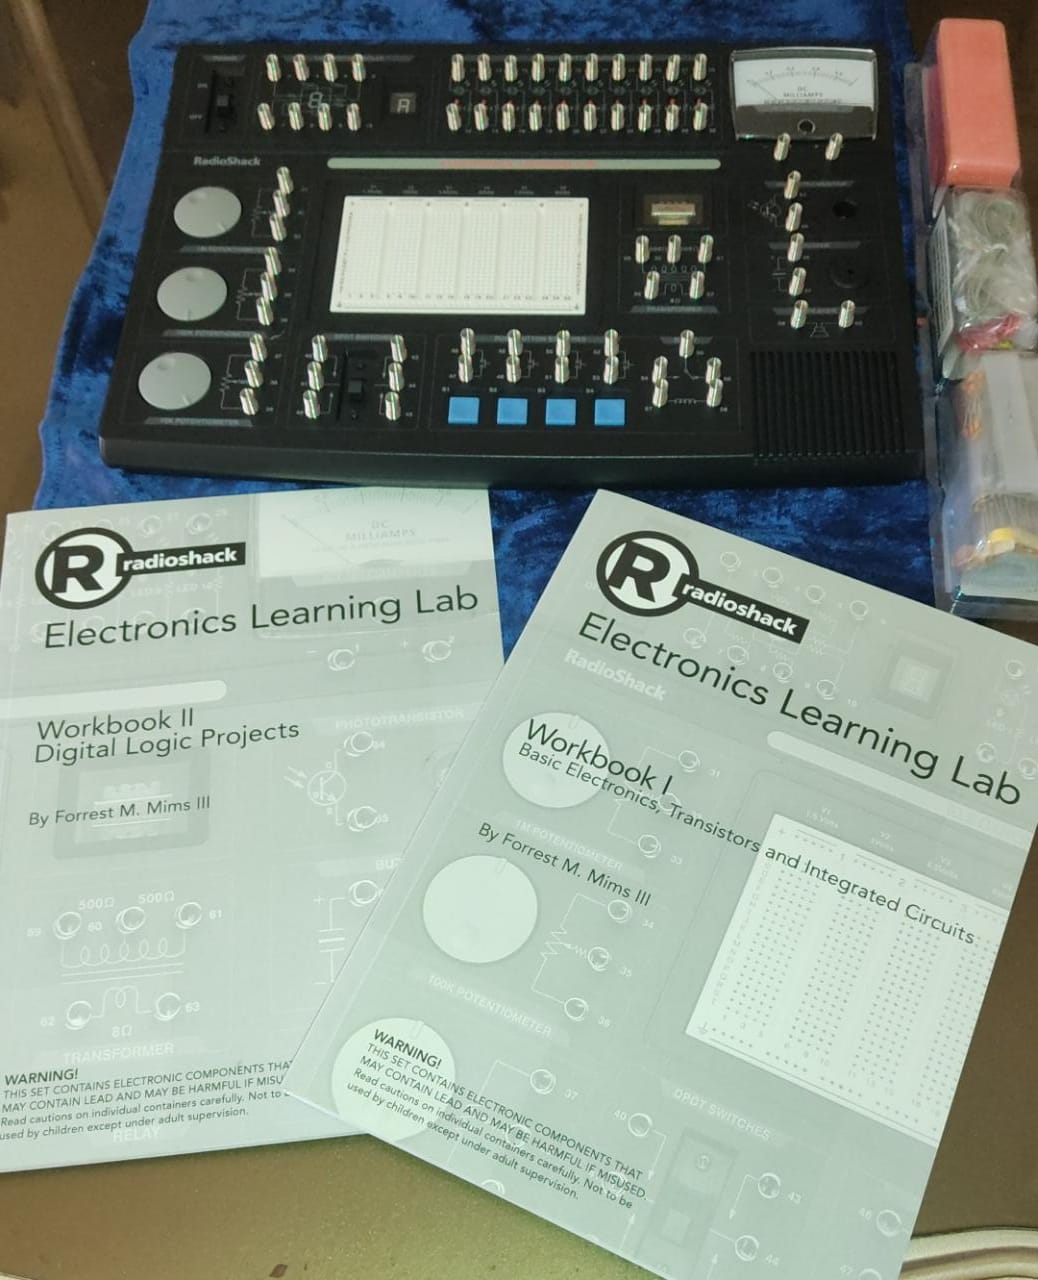 accesorios para electronica - Laboratorio de Aprendizaje de electrónica Radioshack 0